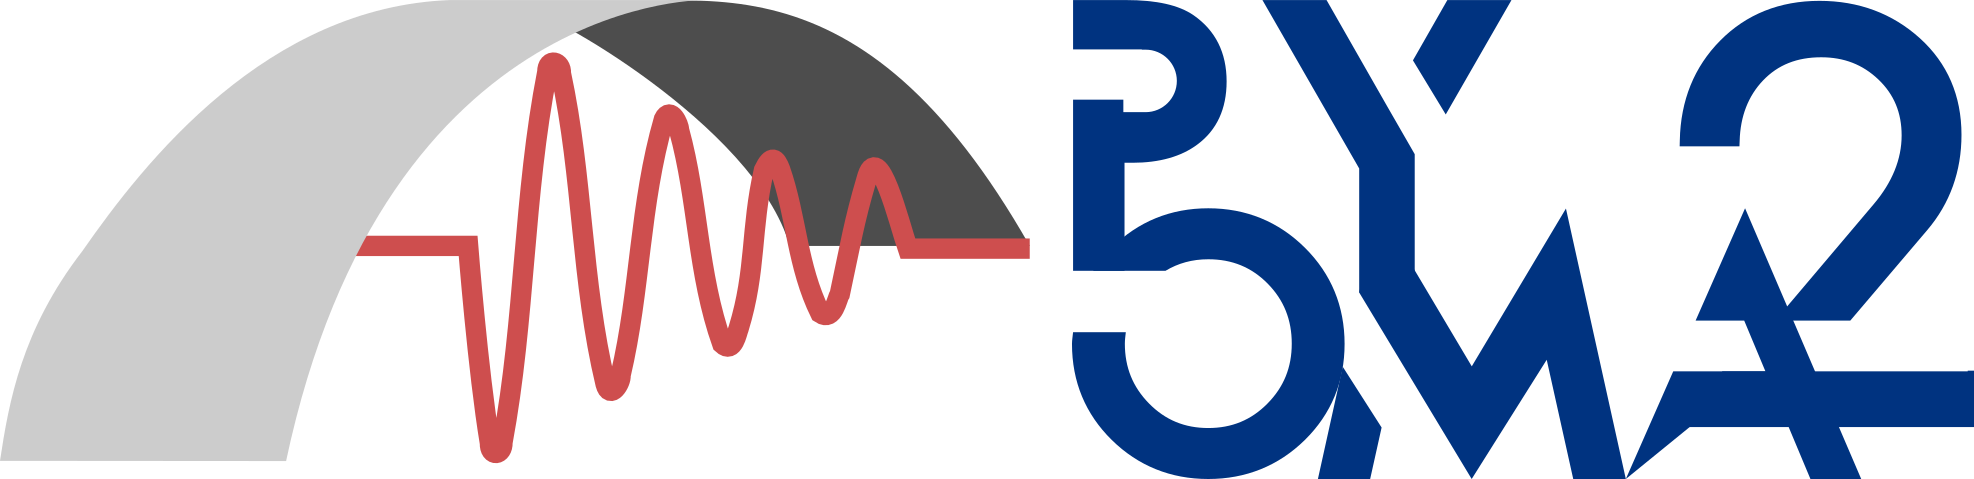 pyoma2_logo_v2_COMPACT